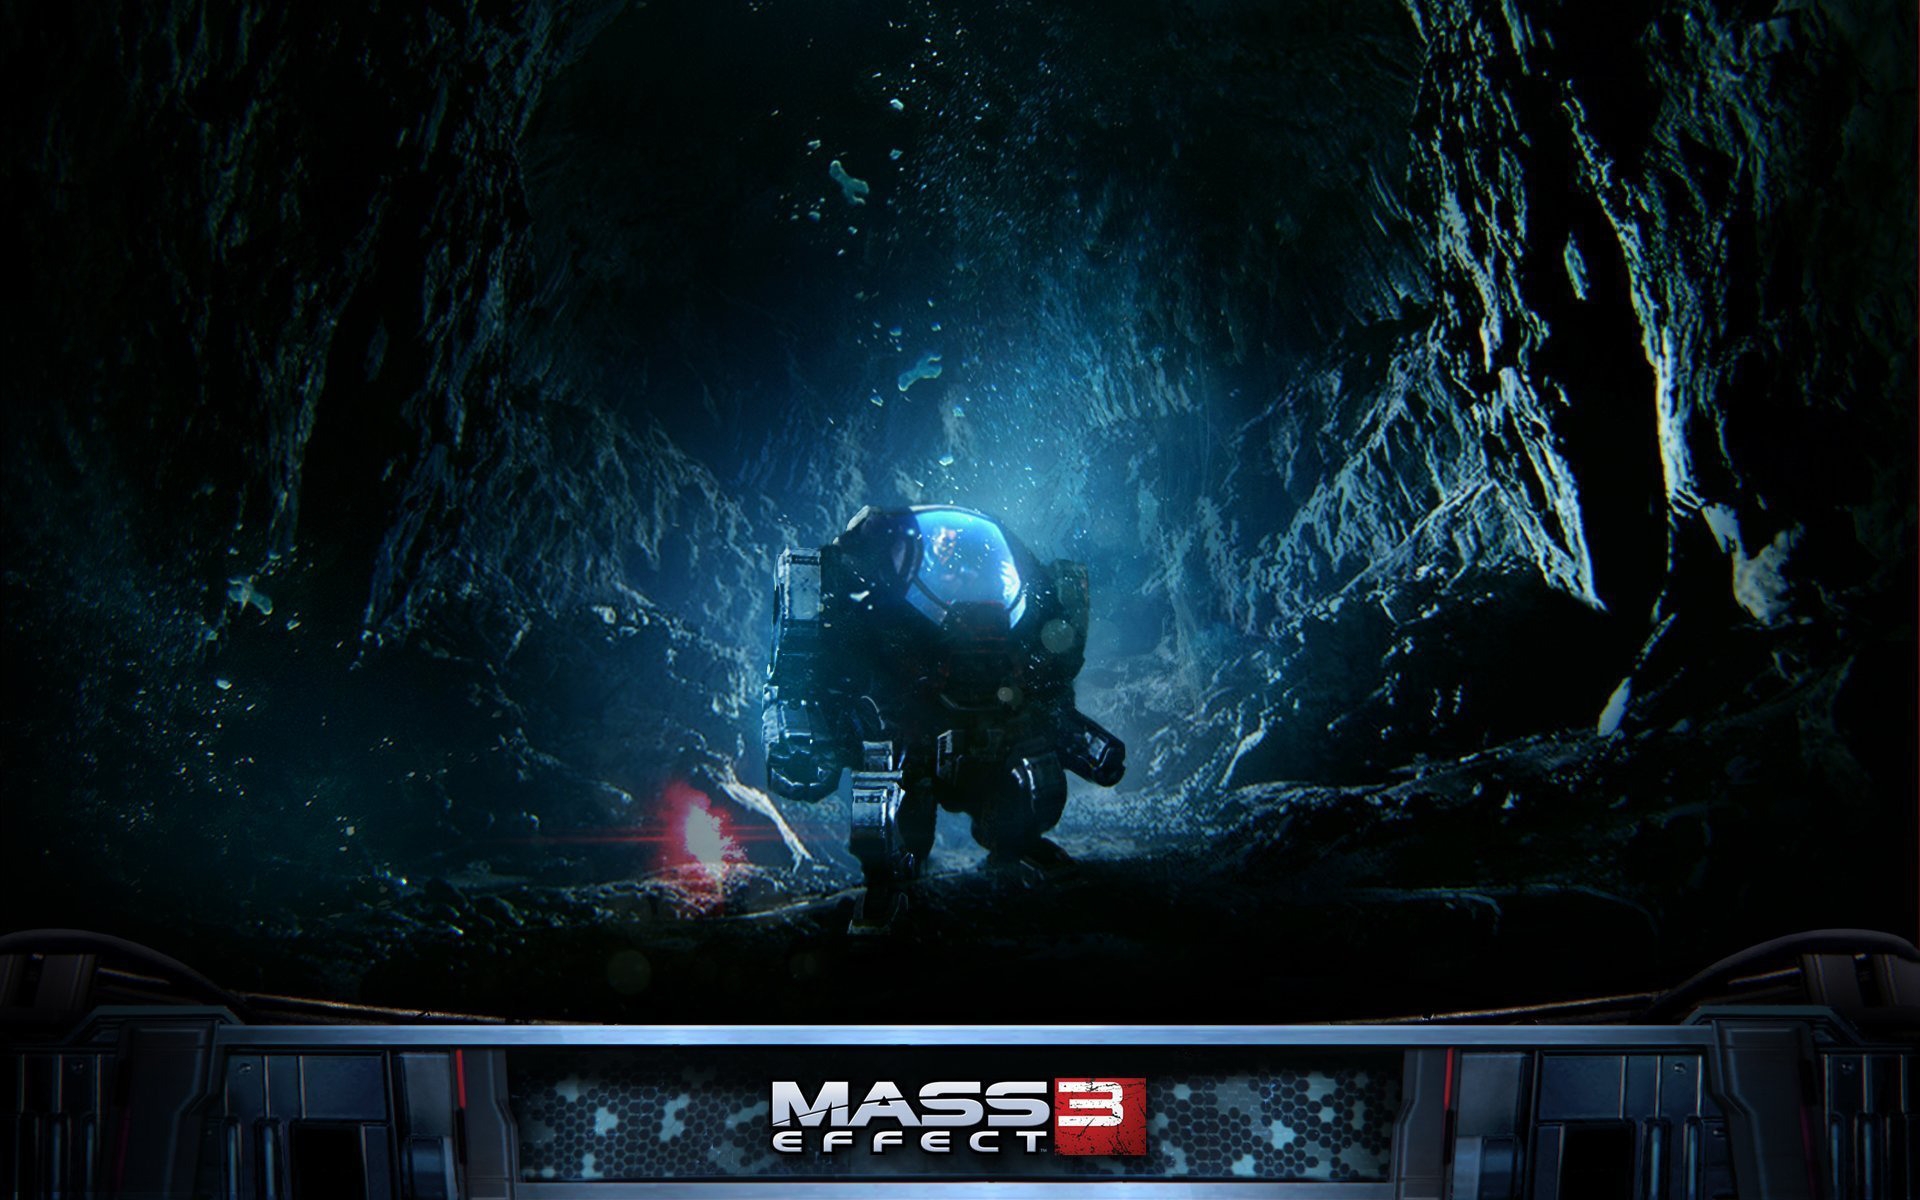 Mass Effect 3 Robot for 1920 x 1200 widescreen resolution